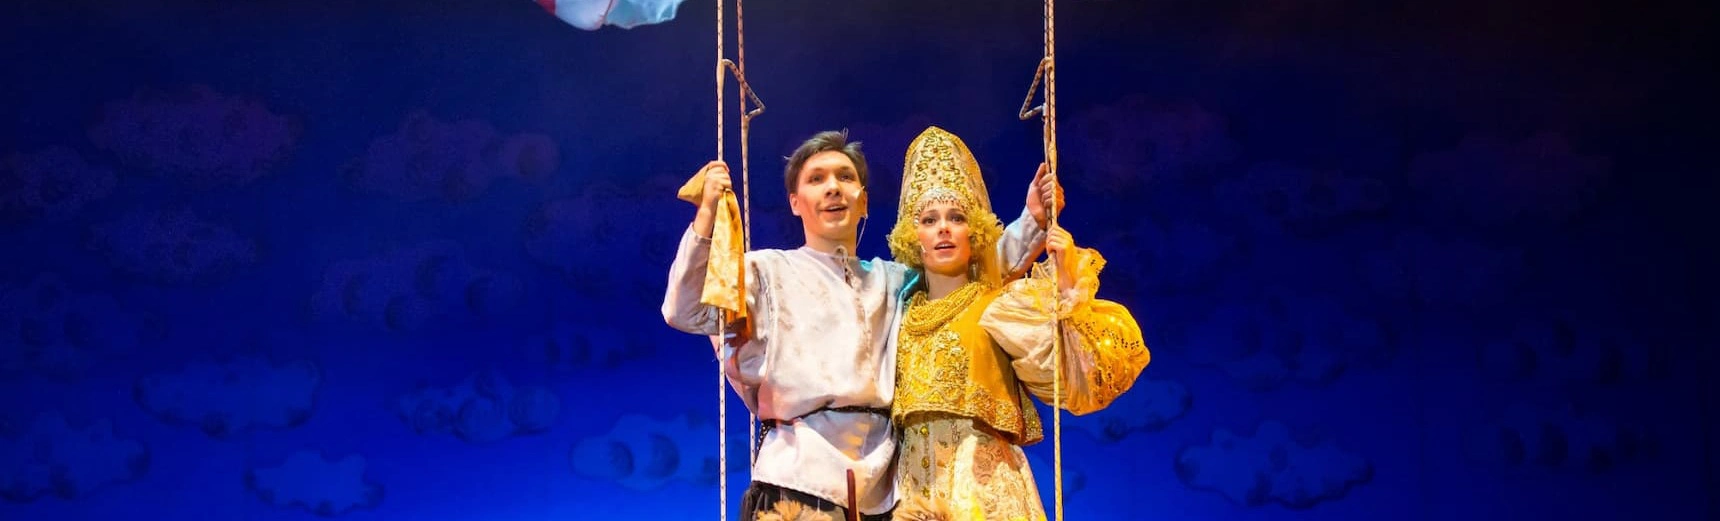 Театриум на Серпуховке покажет детский мюзикл «Летучий корабль»